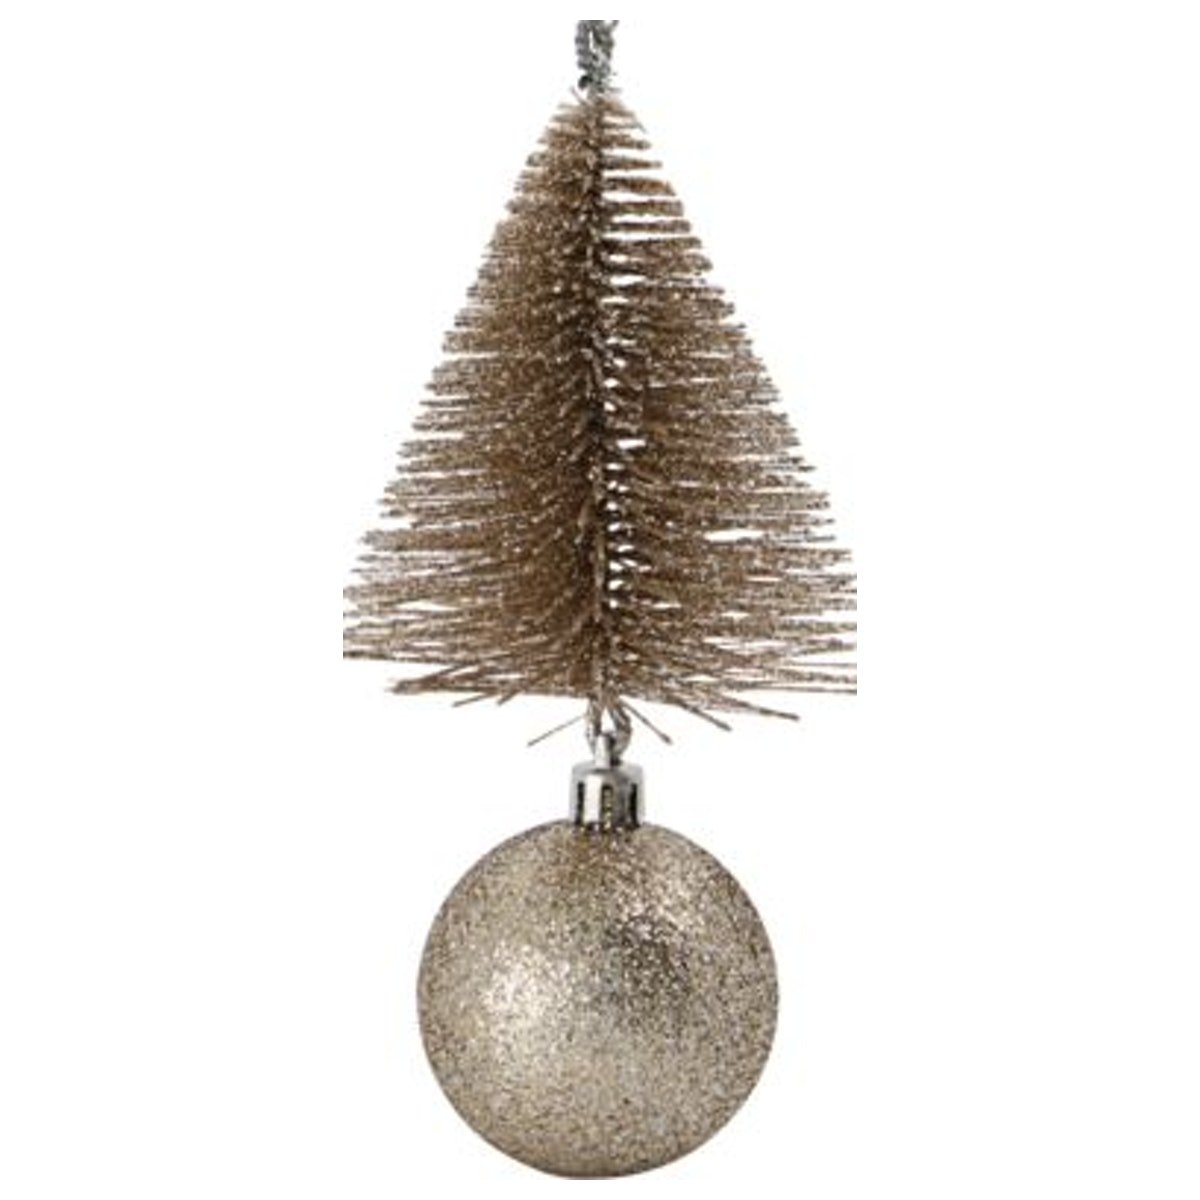 Julepynt, Tree & bell by House Doctor (H: 15 cm. B: 8 cm. L: 8 cm., Sand)